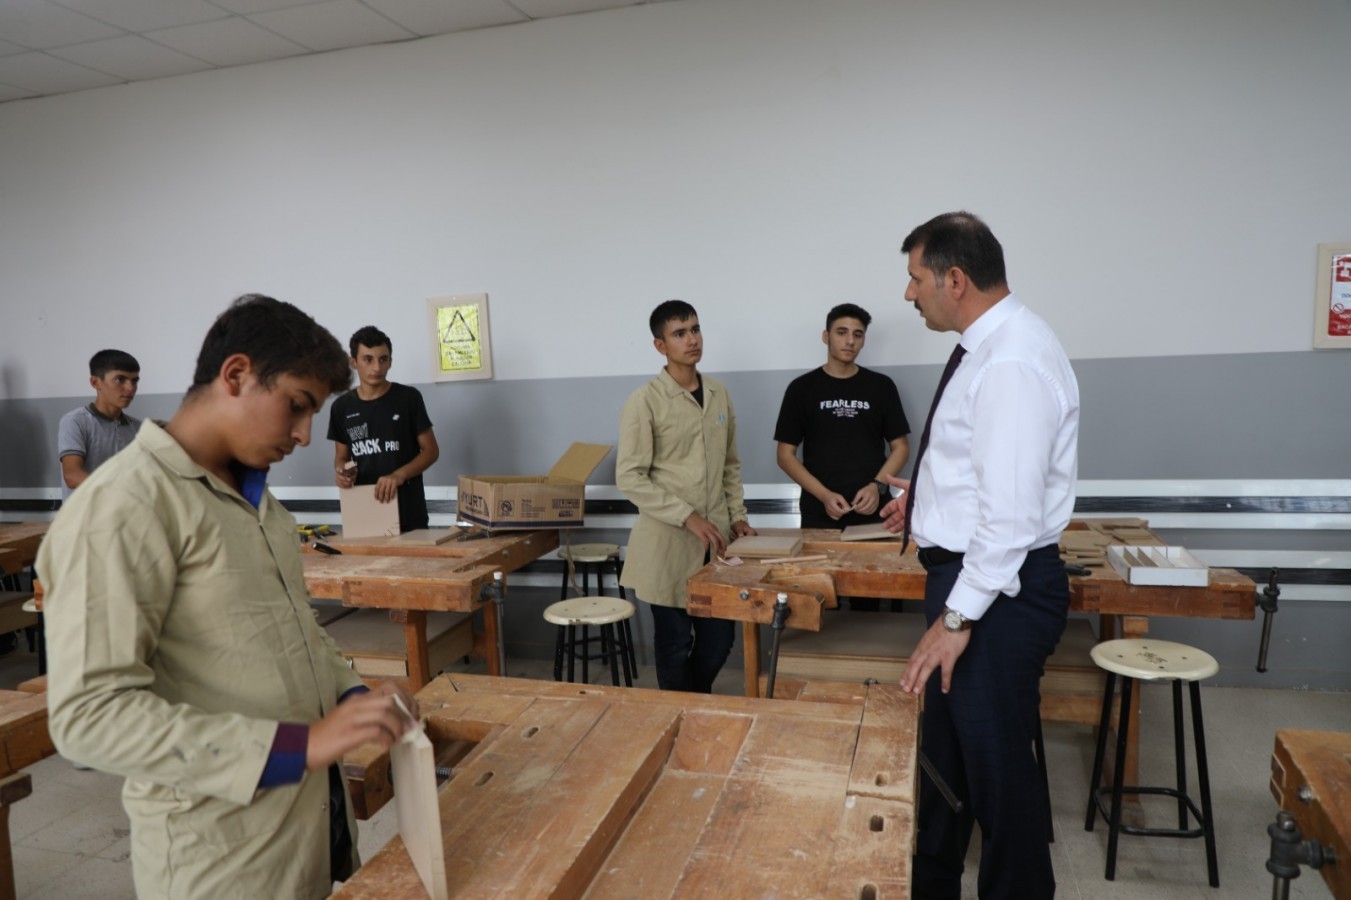 Şanlıurfa'da Sınıflarda Öğrencilere Telefon Yasağı